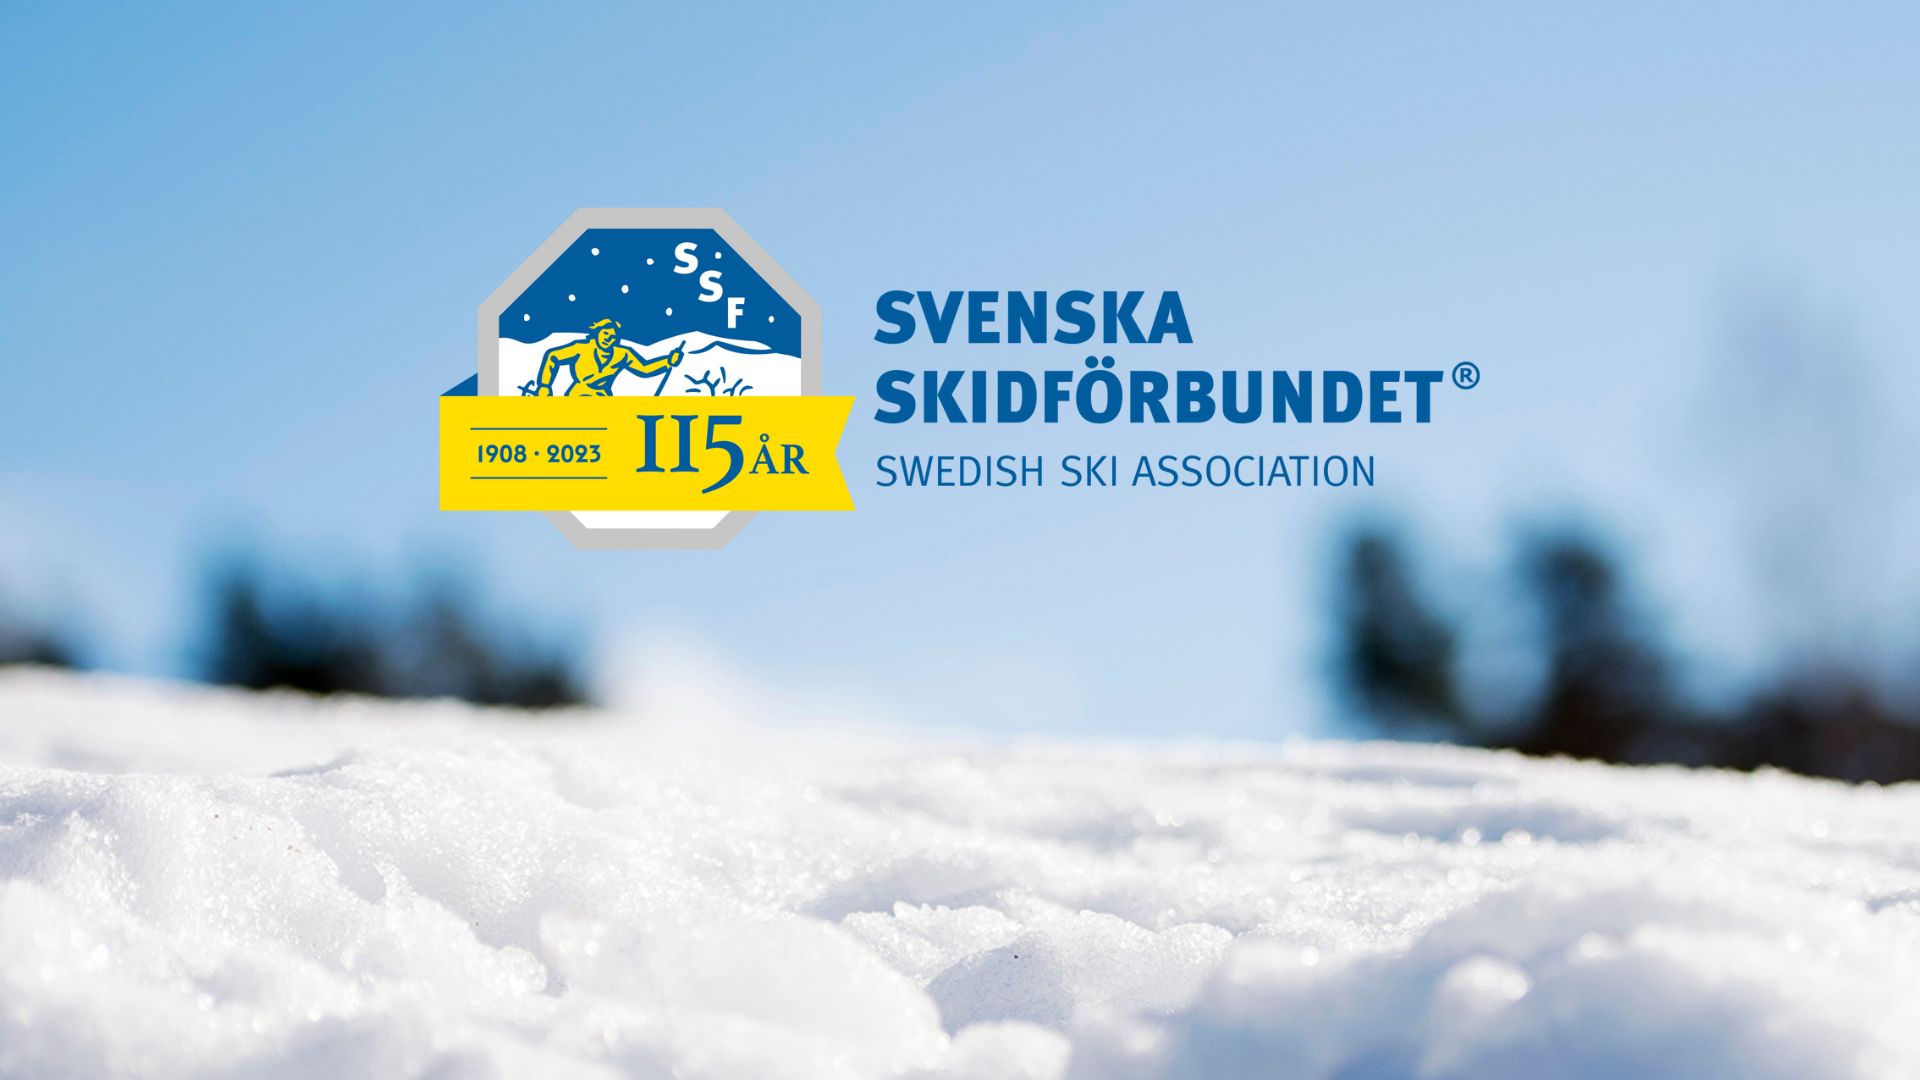 Snö och blå himmel med SSFs logotyp försedd med band som visar 115 år.